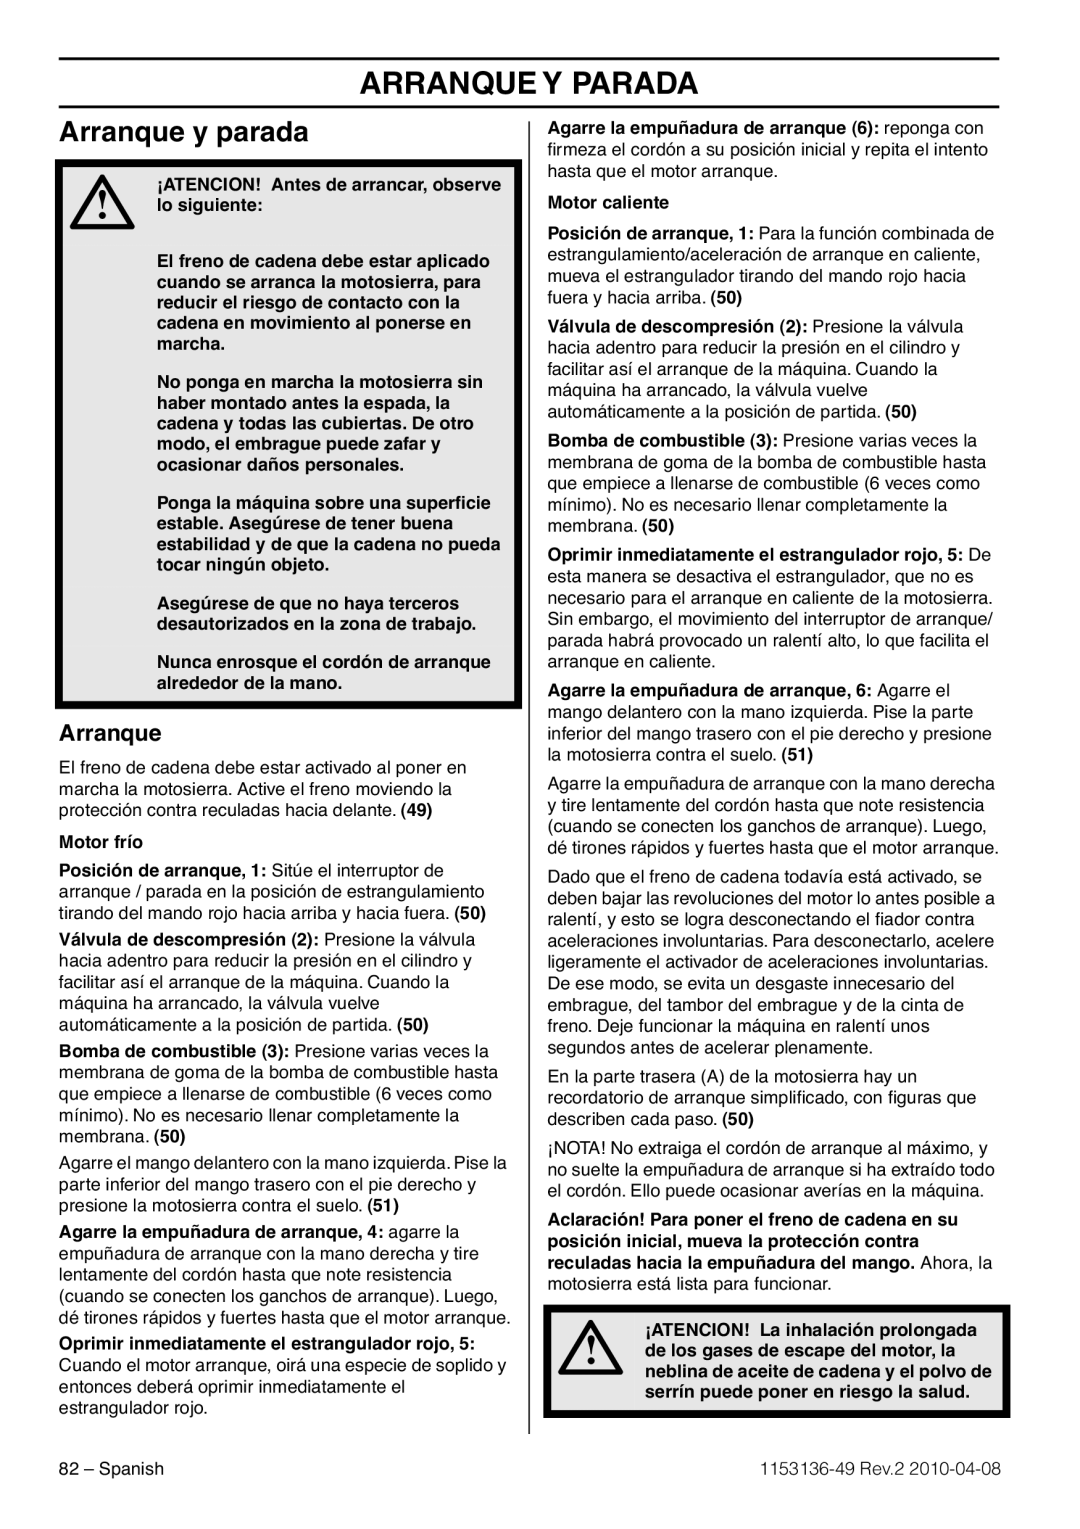 Husqvarna 1153136-49 manuel dutilisation Arranque Y Parada, Arranque y parada 